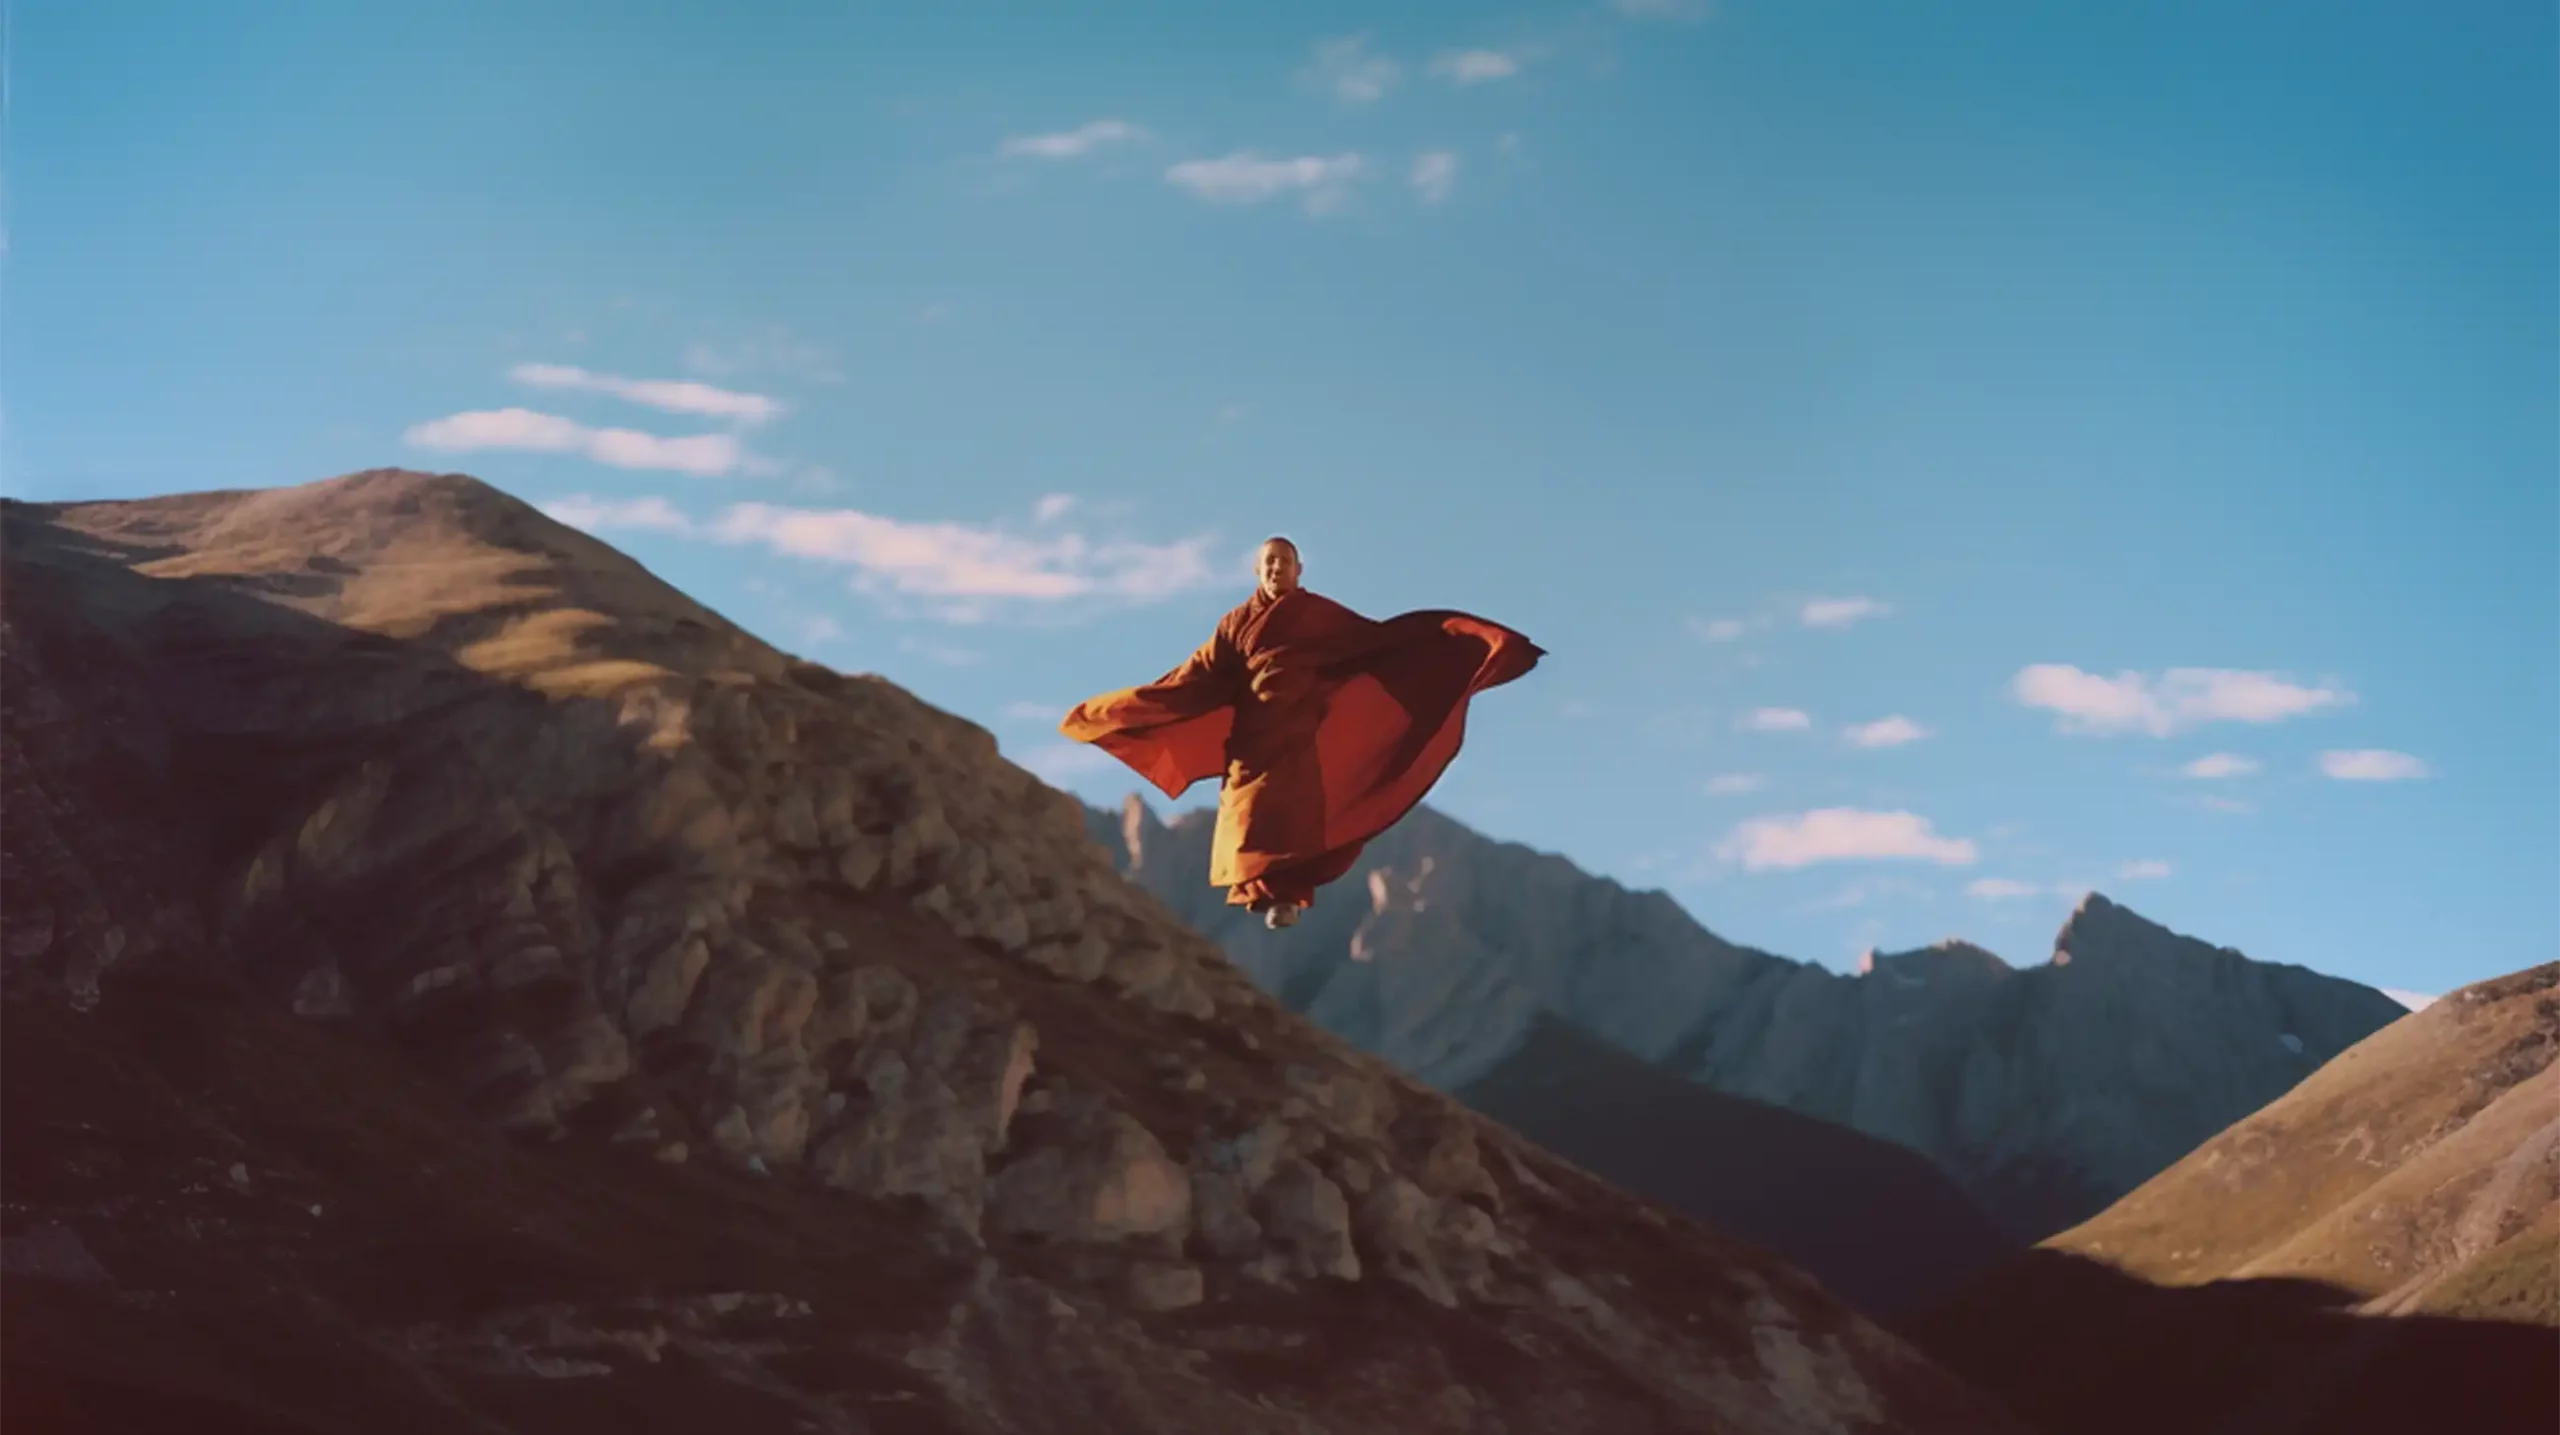 Karmapa oberhaupt Karma-Kagyü-Linie des Buddhismus aus Tibet fliegt in einer tibetischen Lanschaft mit Bergen in der Luft